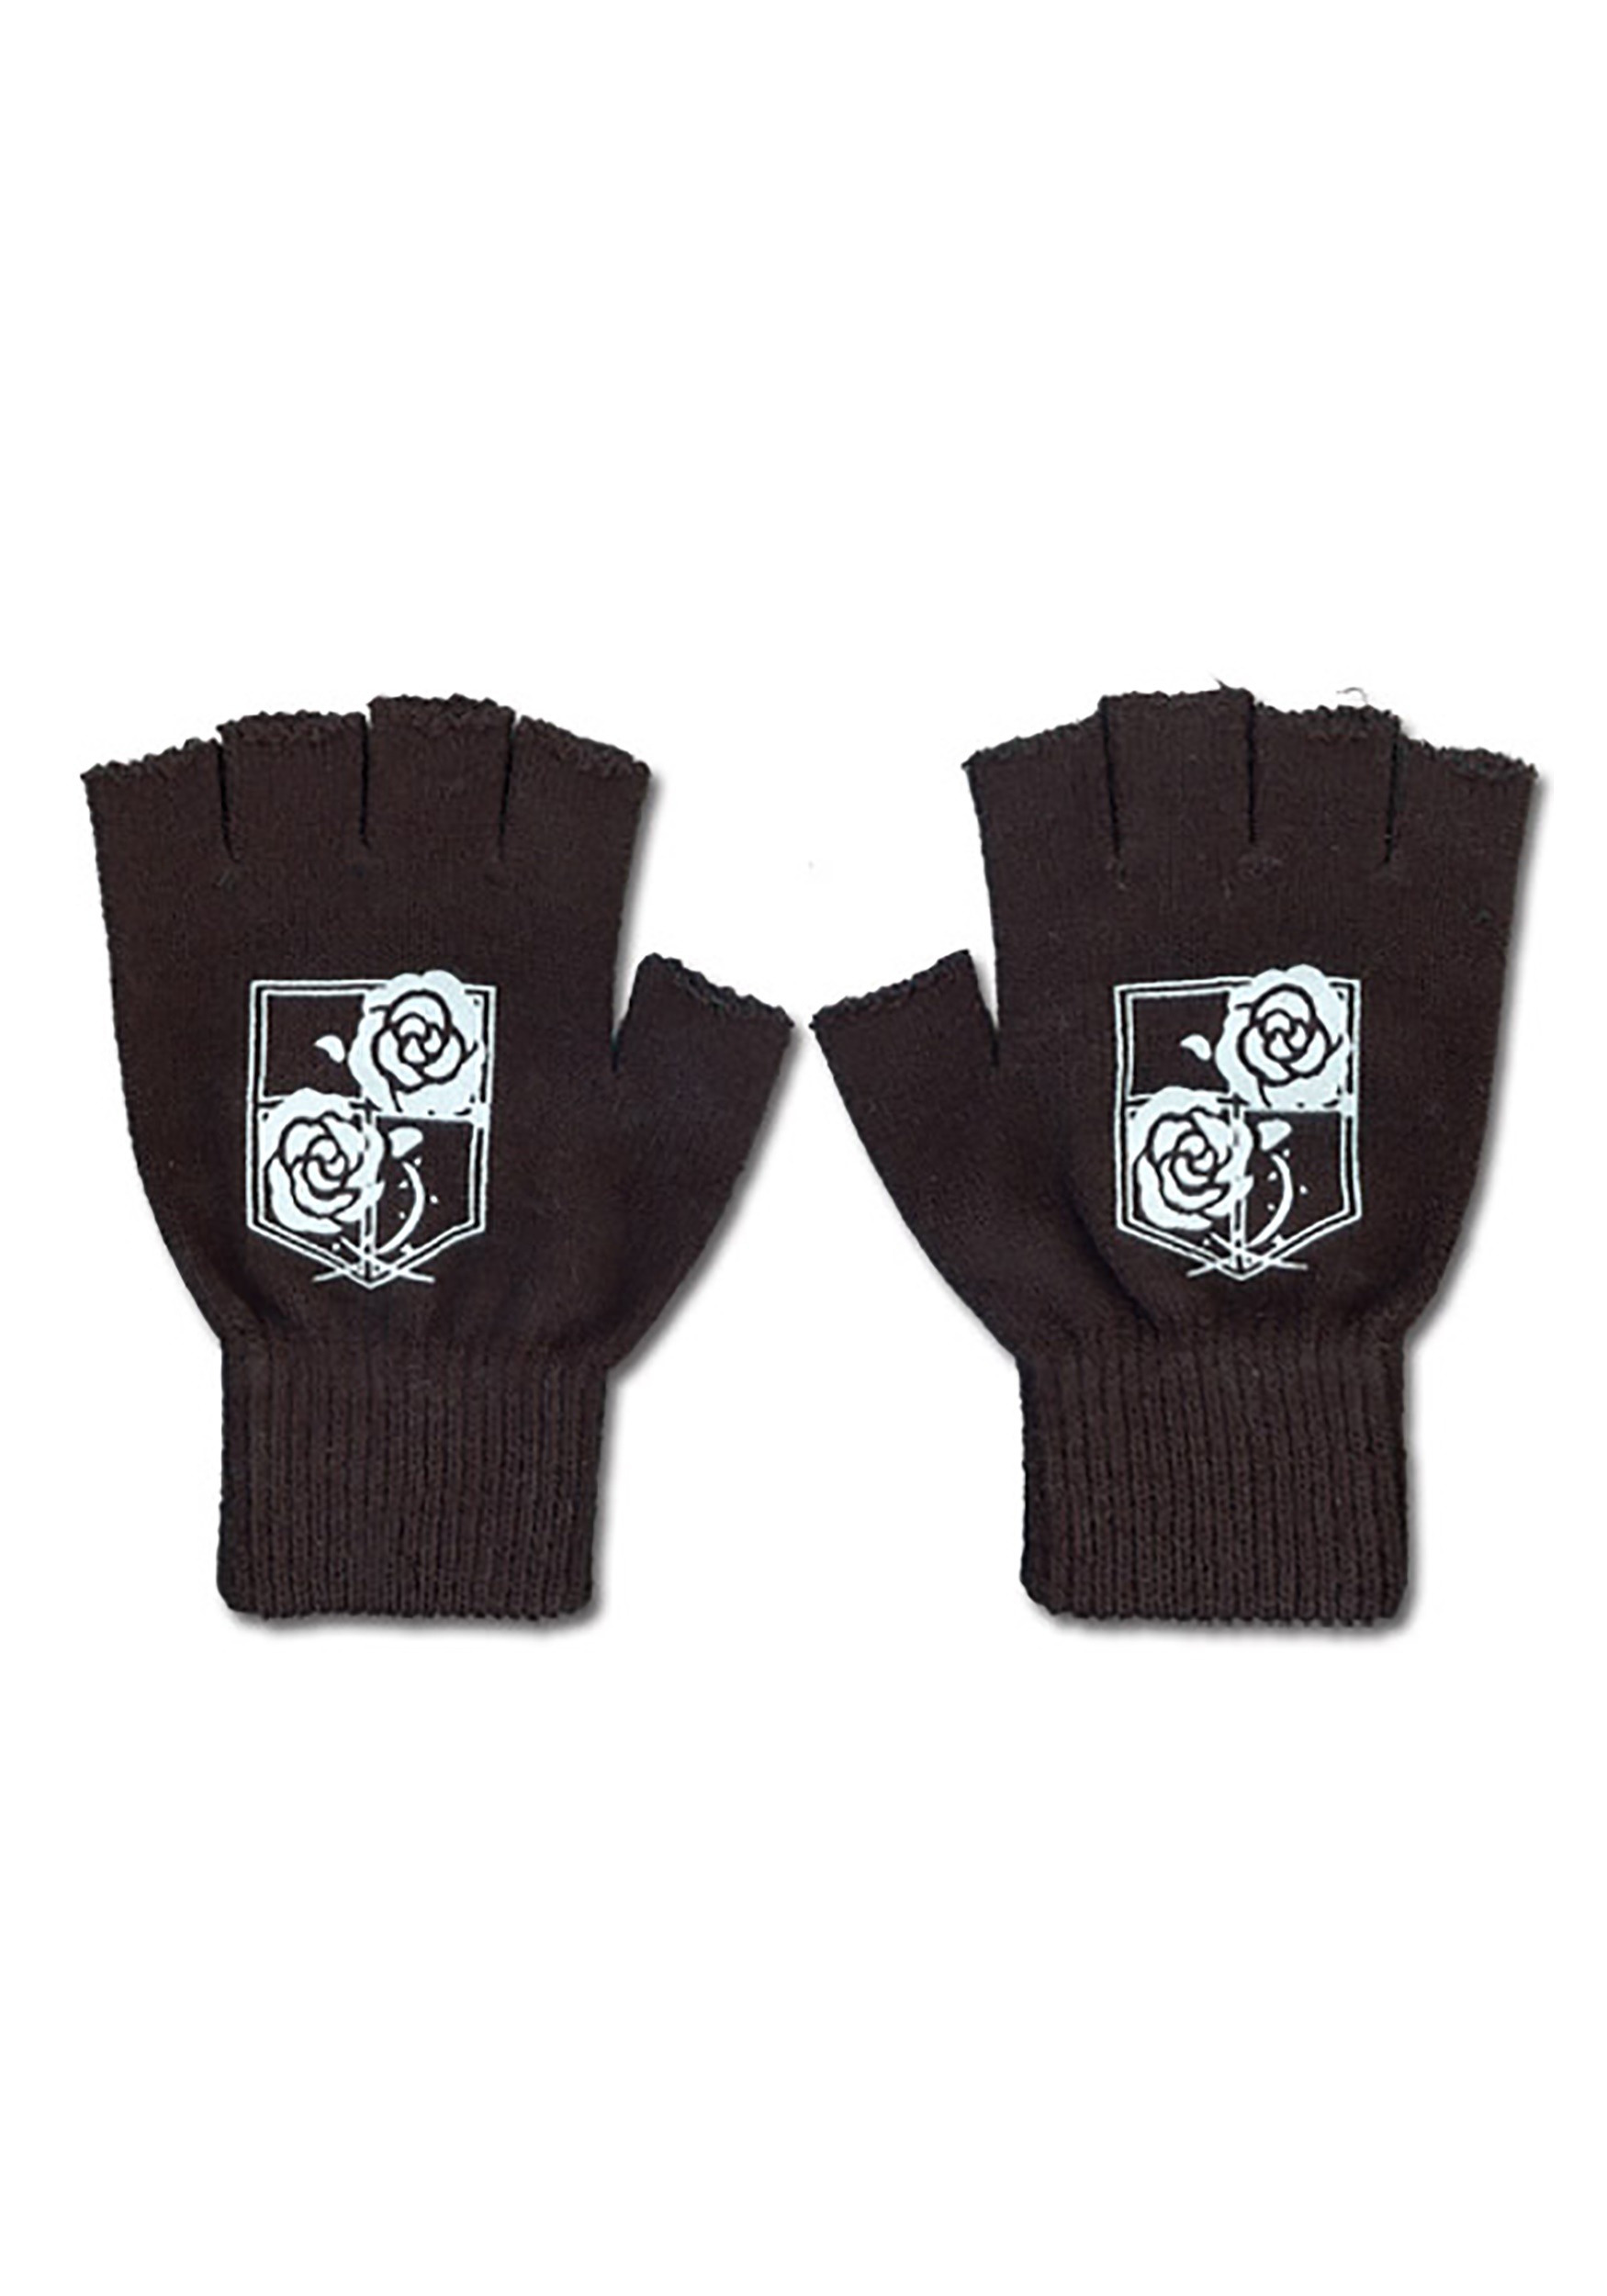 Attack on Titan Garrison Regiment Gloves